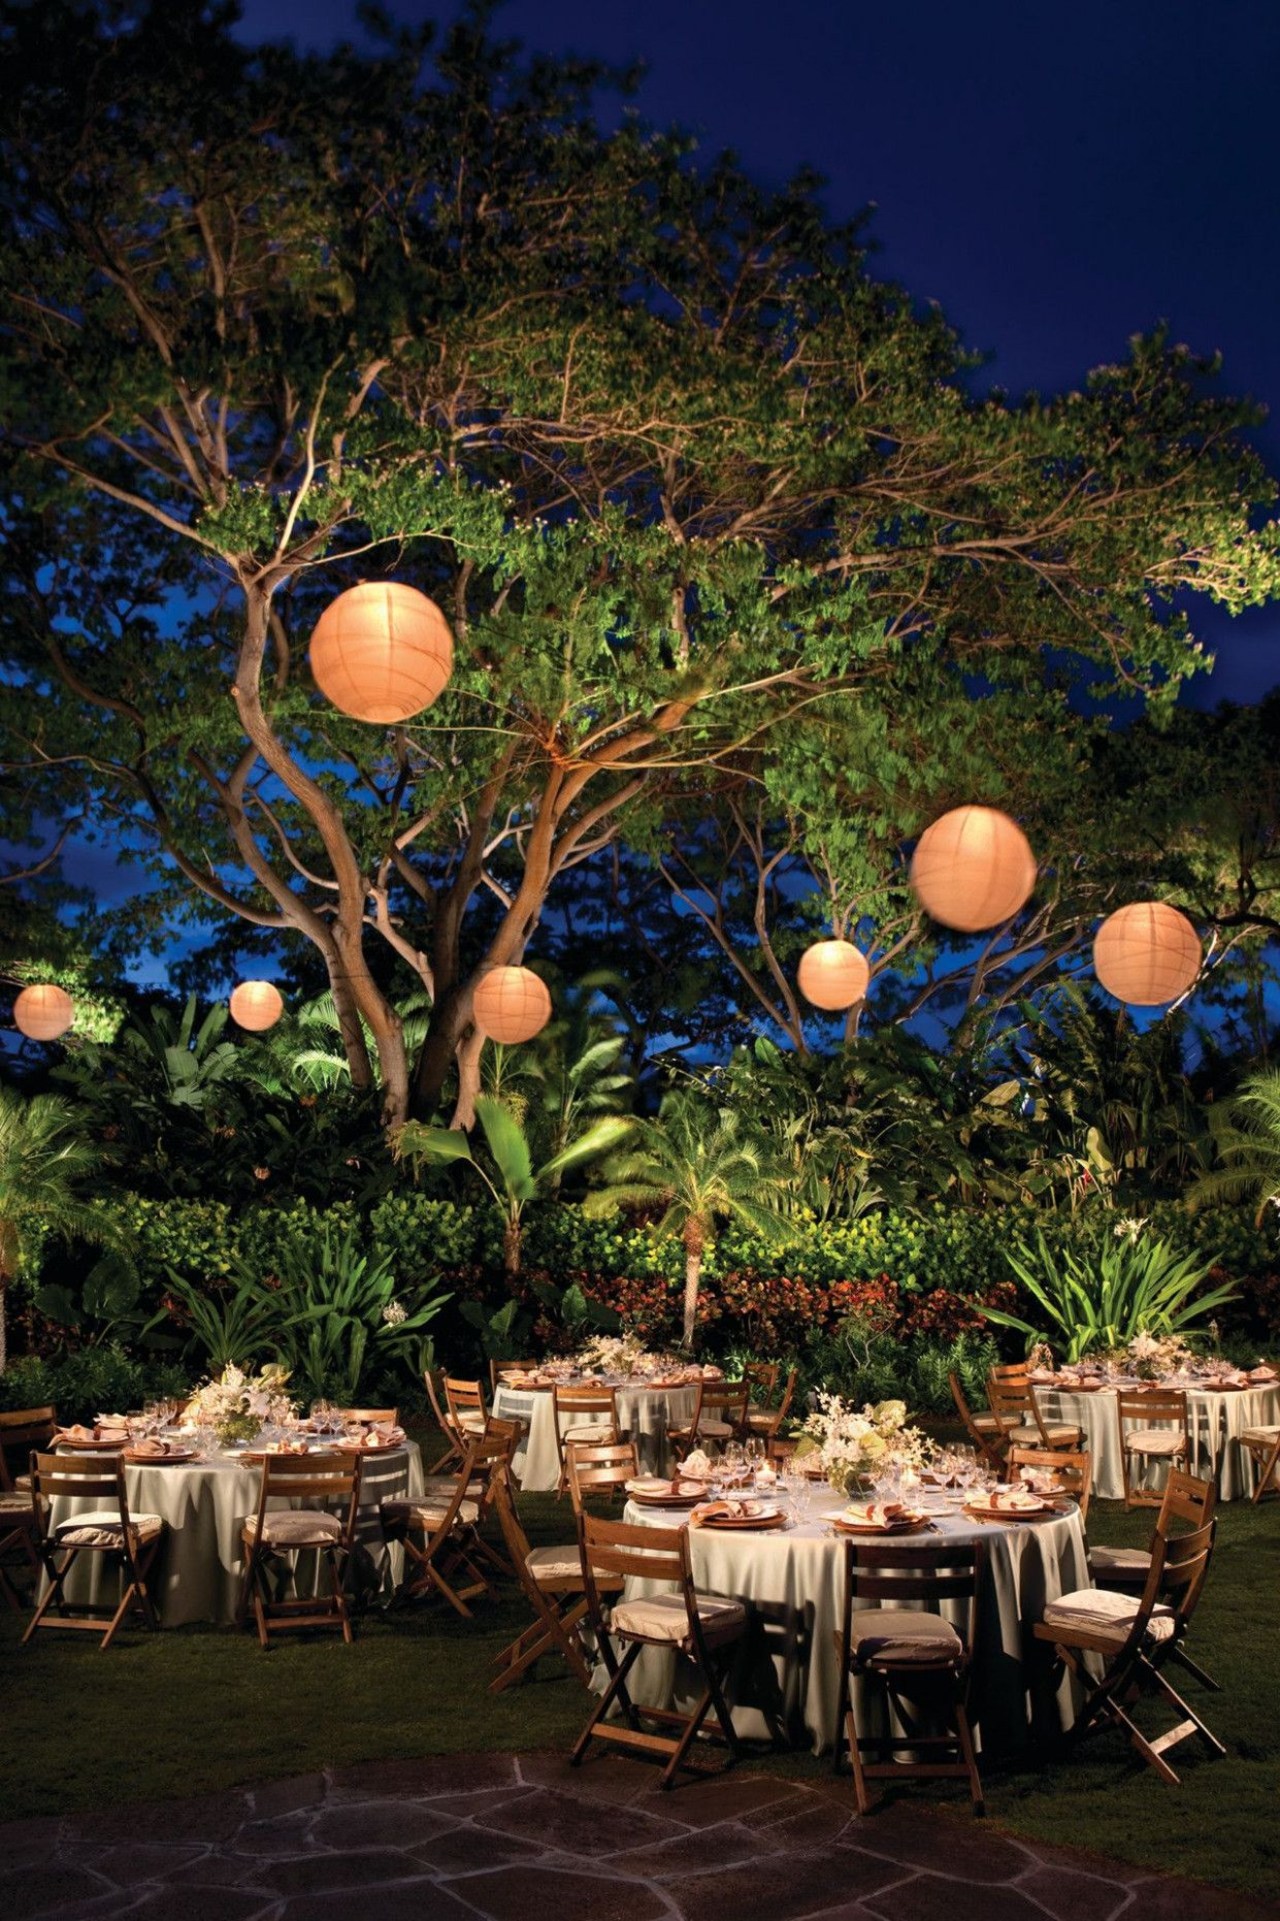 décoration lumineuse mariage de nuit dans le jardin boules lumineuses